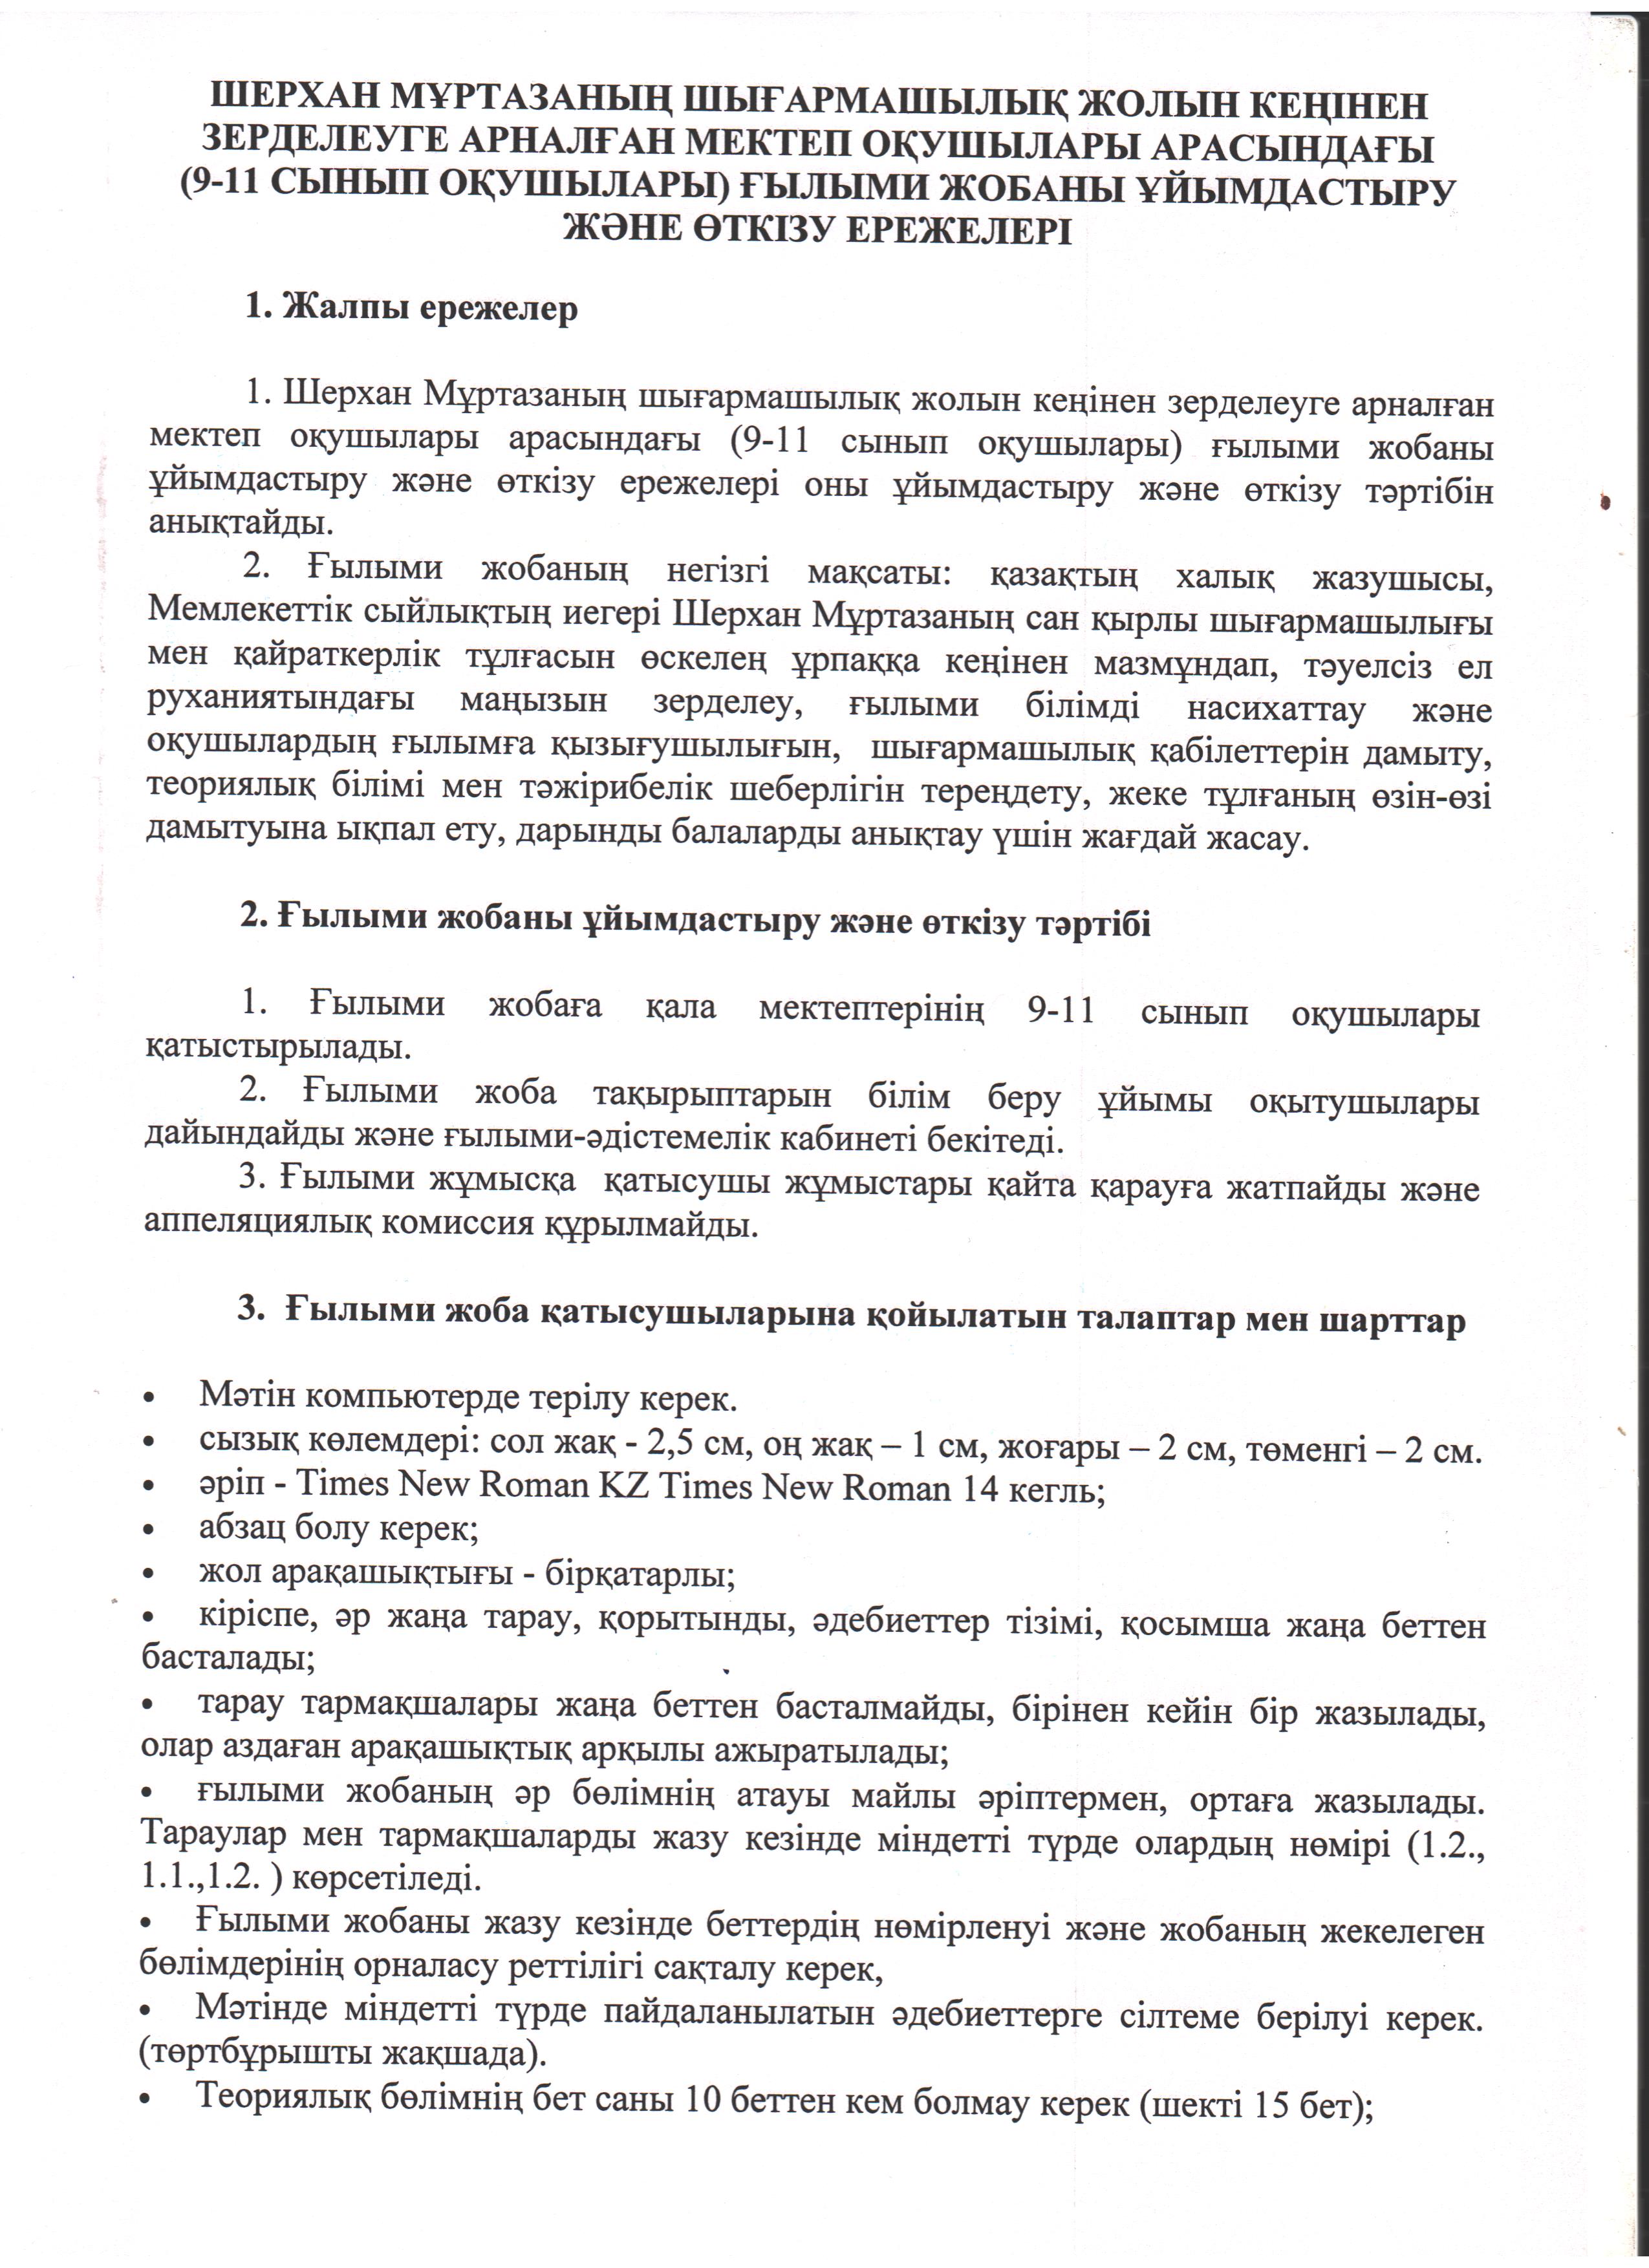 Фото Перепечатываю текст с изображения в формат документа. На русском и казахском языках 1